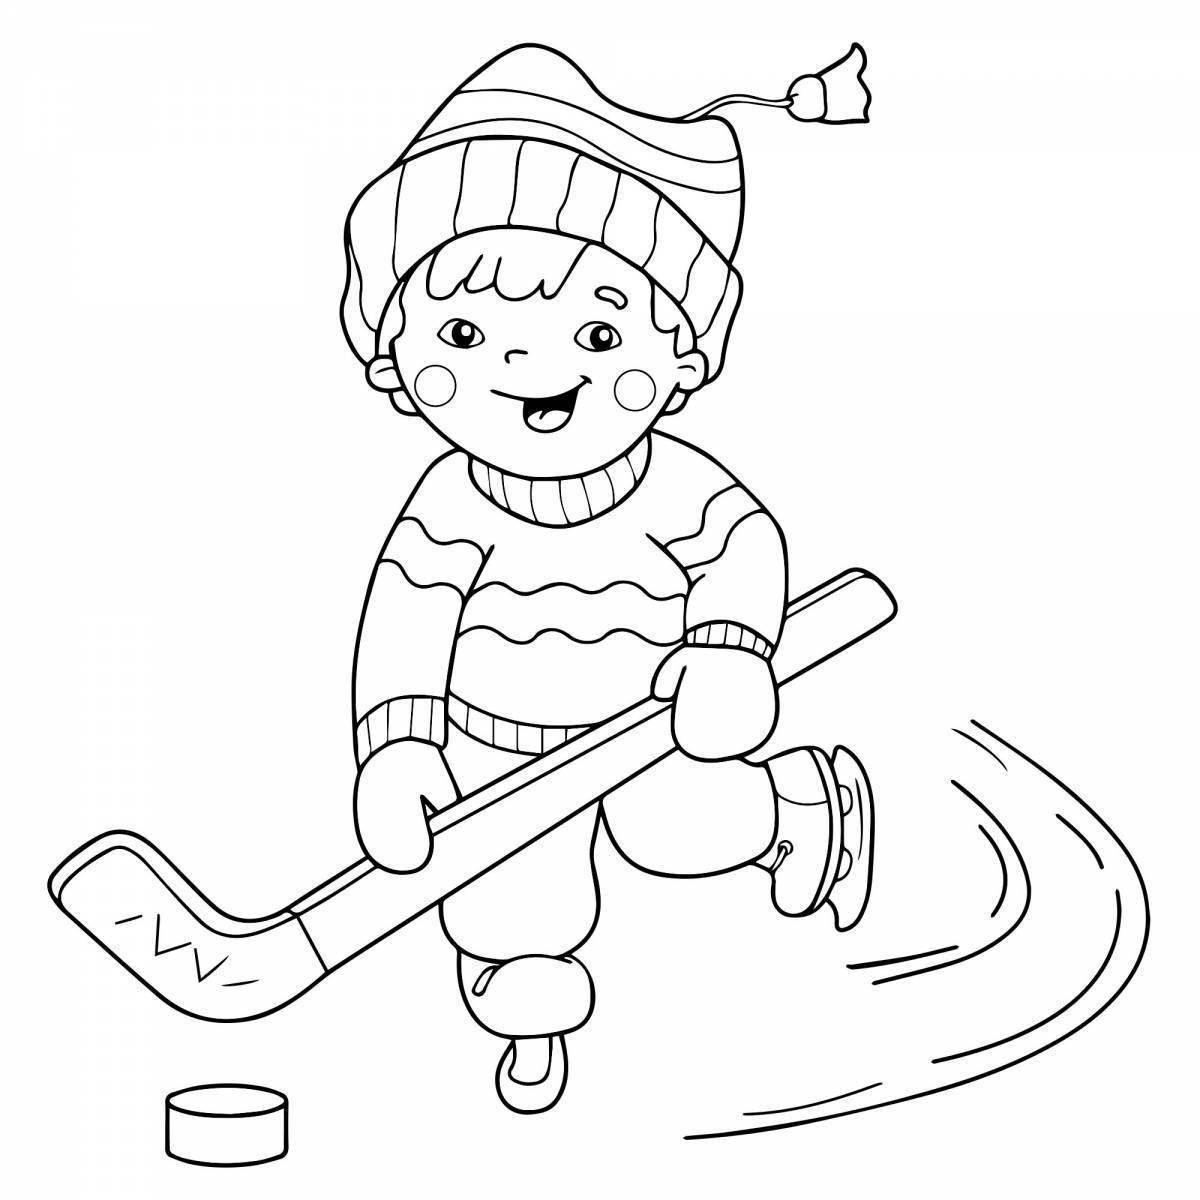 Великолепная картинка с изображением зимних видов спорта для детей в детском саду